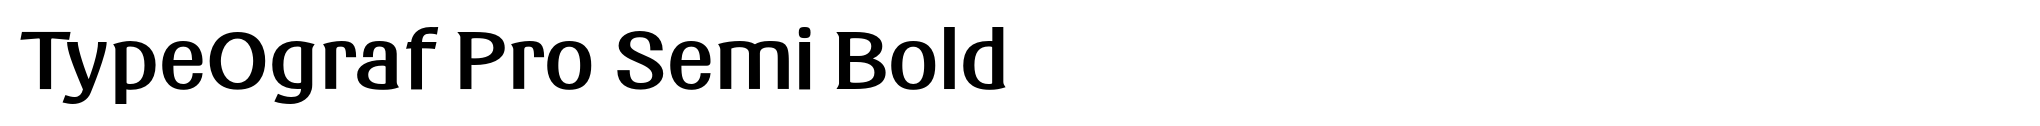 TypeOgraf Pro Semi Bold image